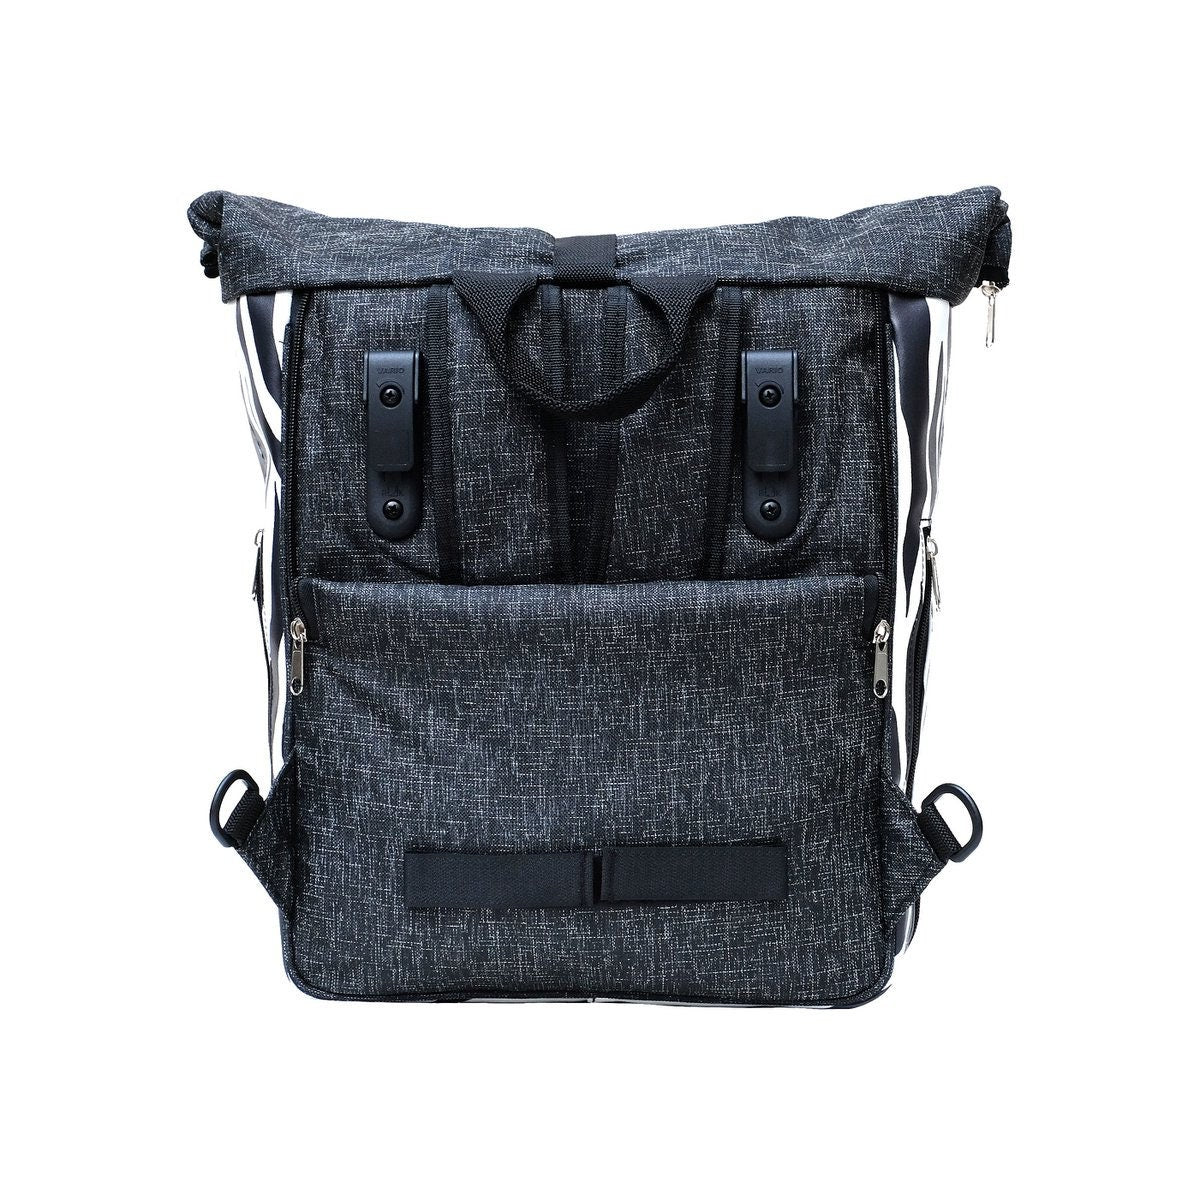 IKURI KOMBI Fahrradtasche / Rucksack mit Befestigung Wasserdicht Gepäcktasche Satteltasche Design ZEBRA